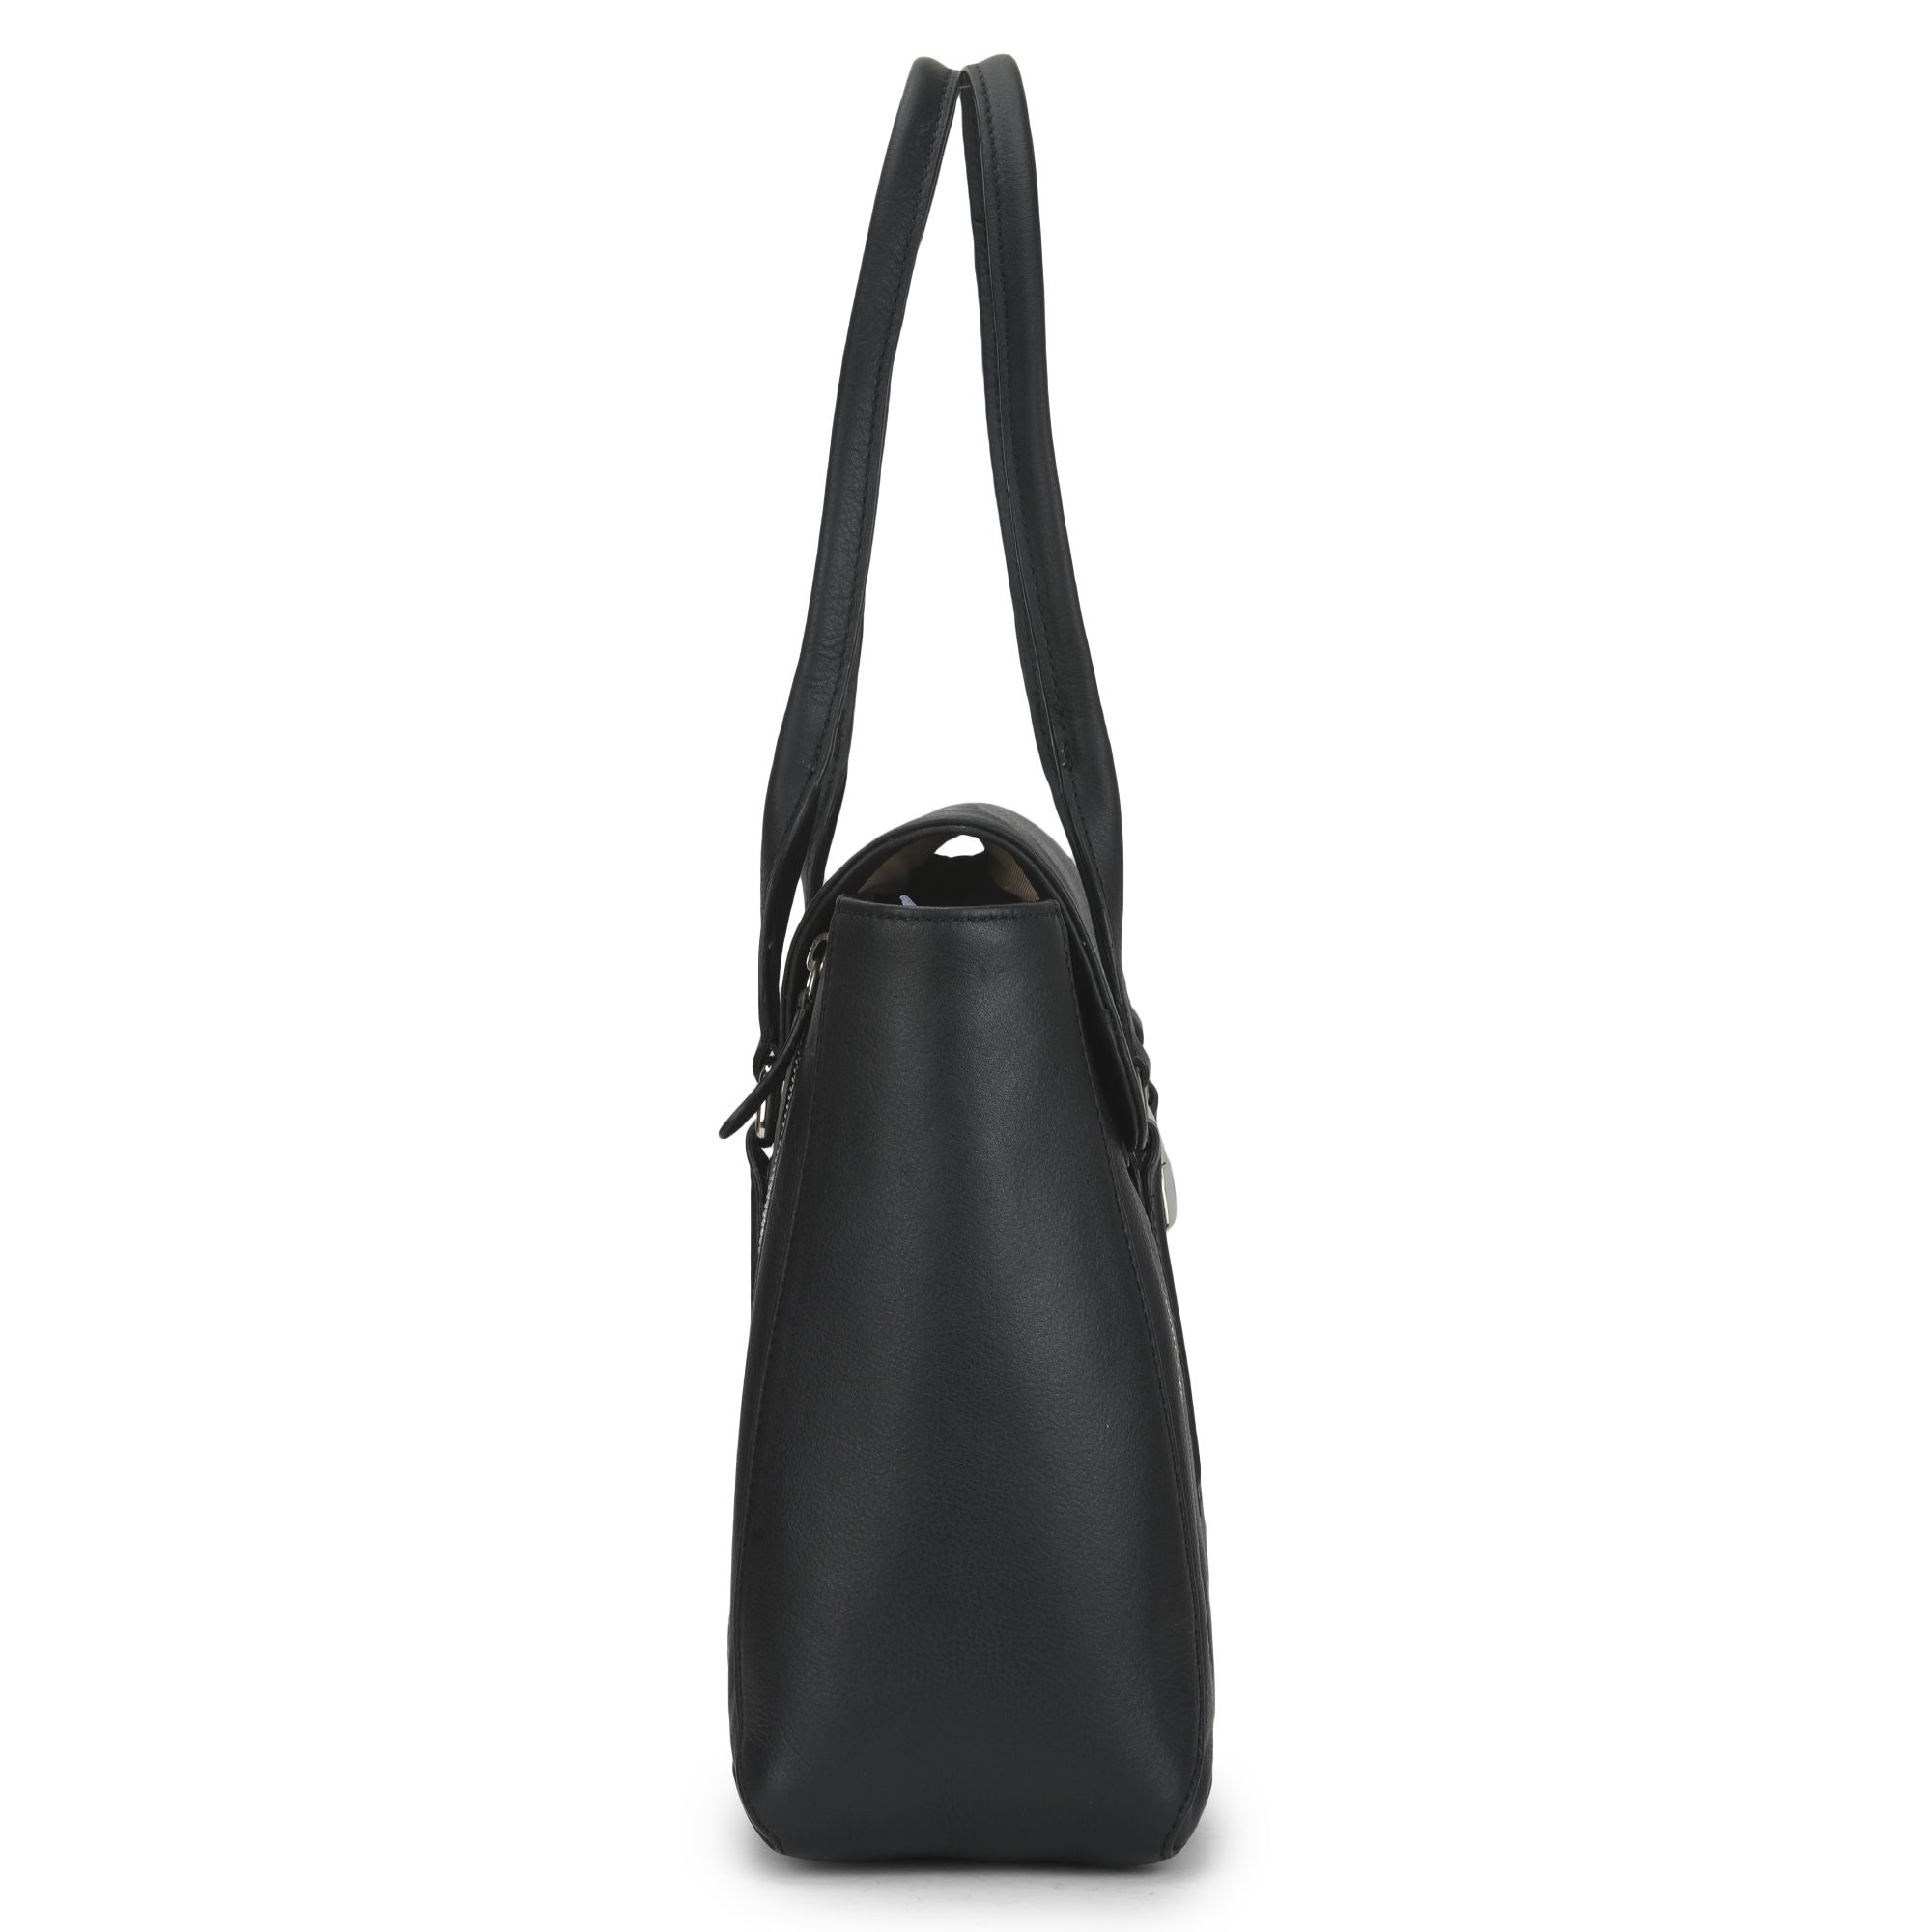 Black handbag for women